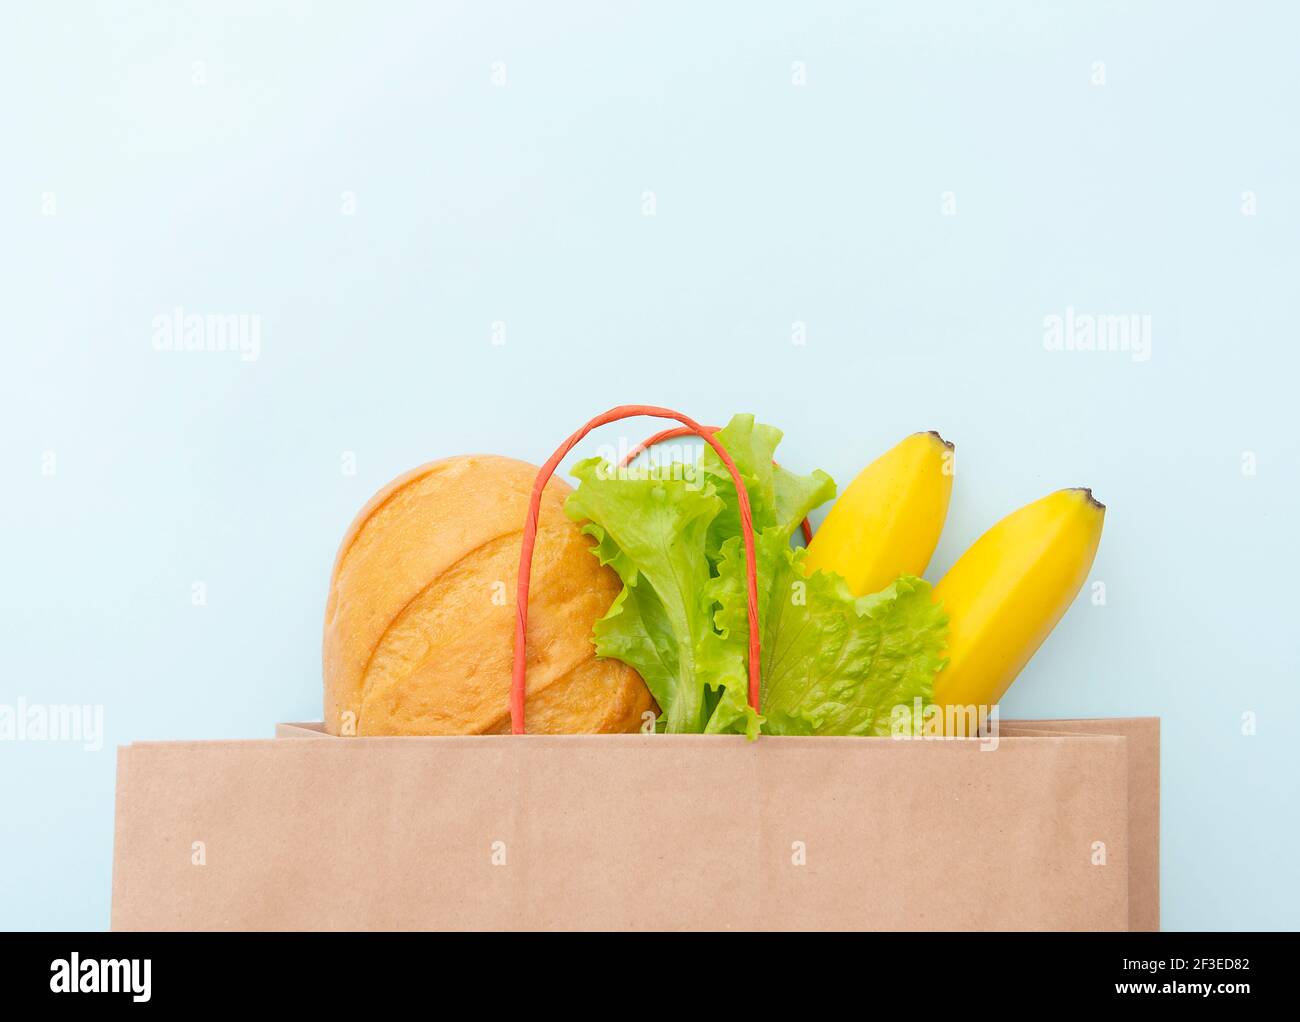 Sacchetto di carta con cibo: Foglie verdi di insalata, pane e banana. Stendere su sfondo blu, vista dall'alto Foto Stock